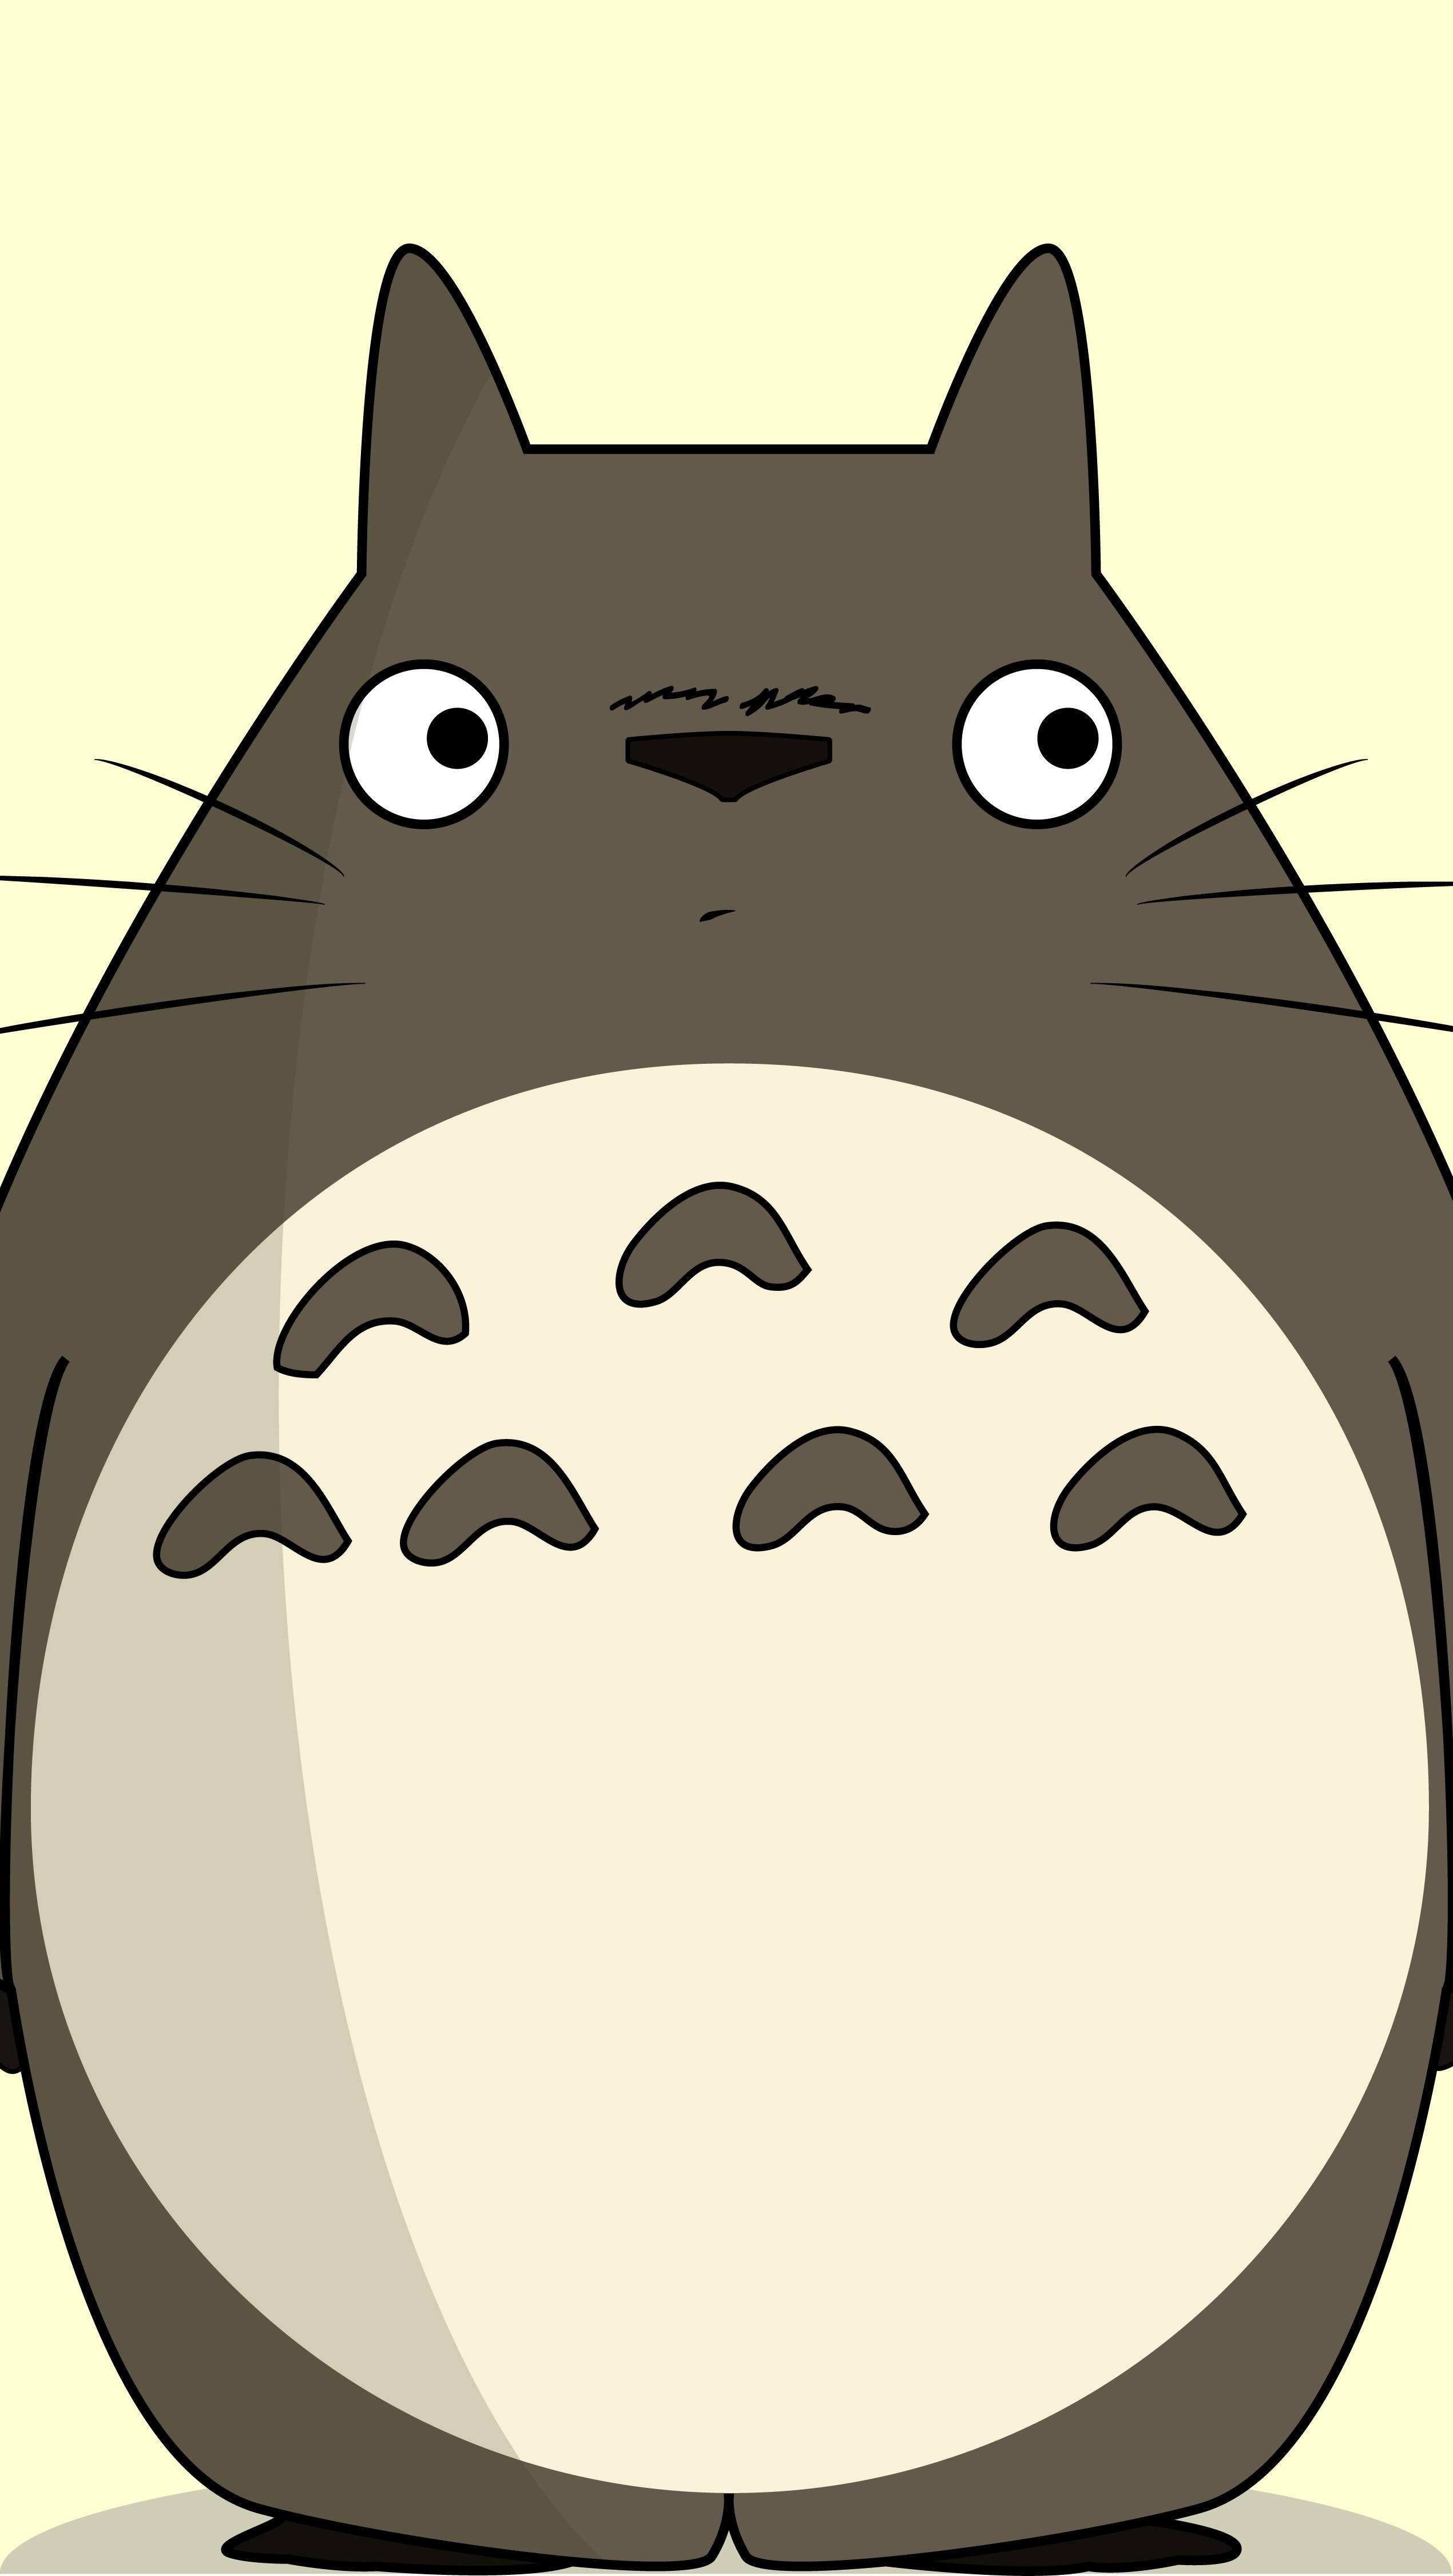 Fondos de pantalla Anime Totoro y Kaonashi (No-Face) de El viaje de Chihiro Vertical